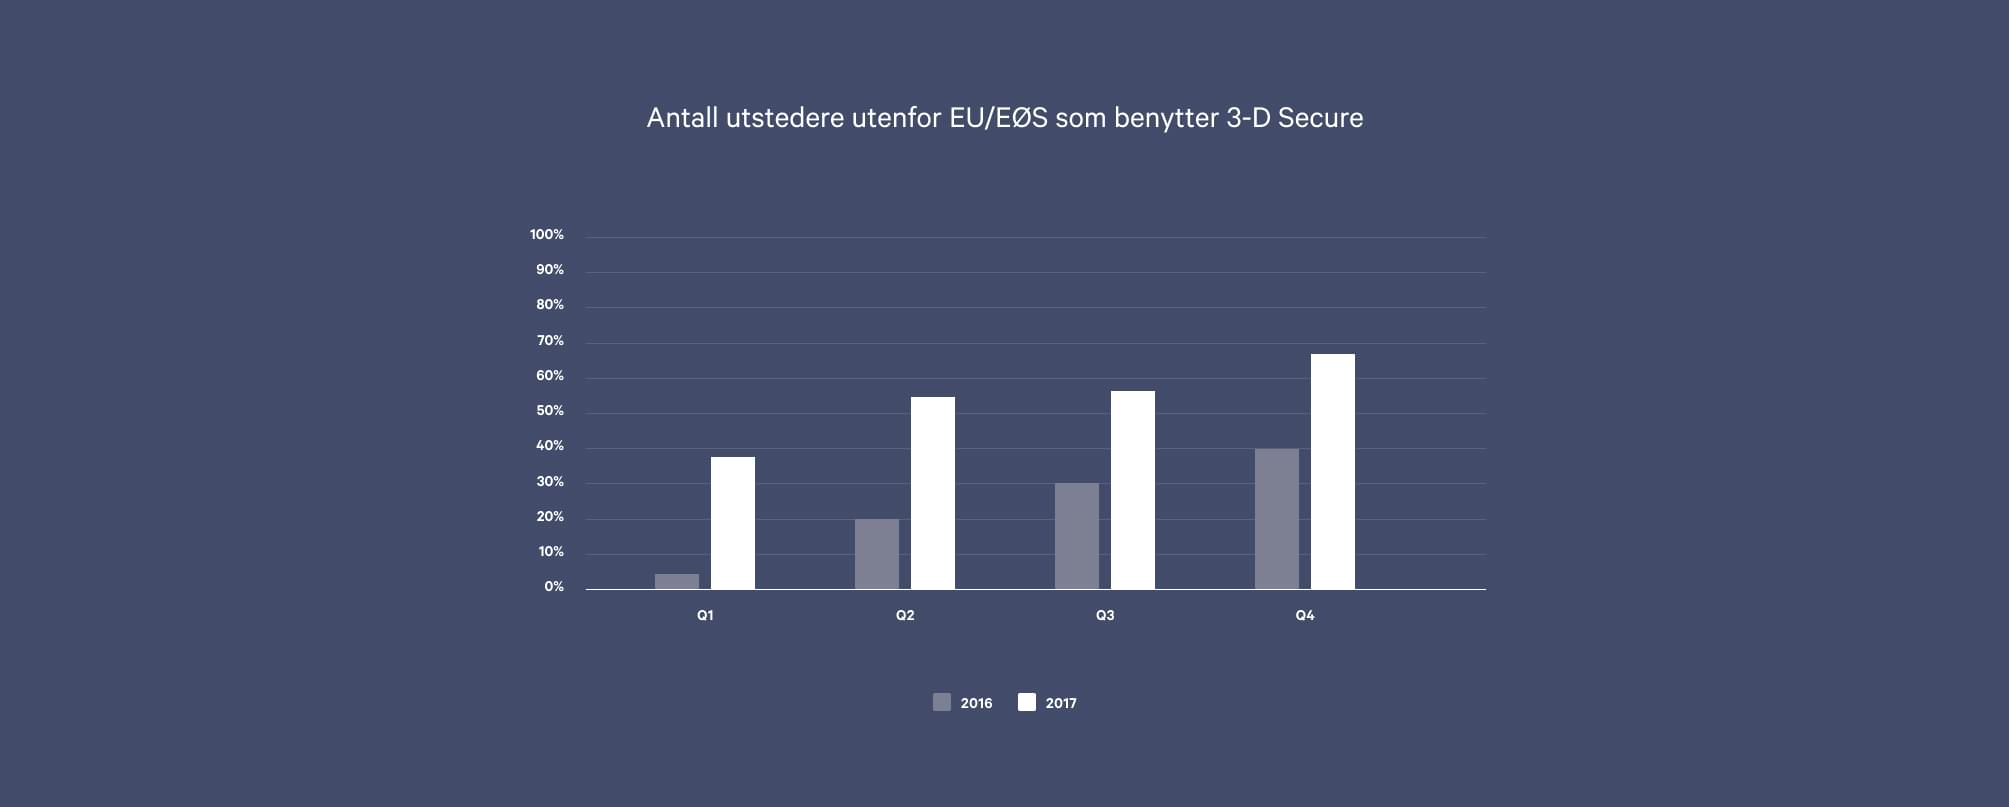 Statistikk over hvor mange kortutstedere innenfor EU/EØS som benytter 3-D Secure